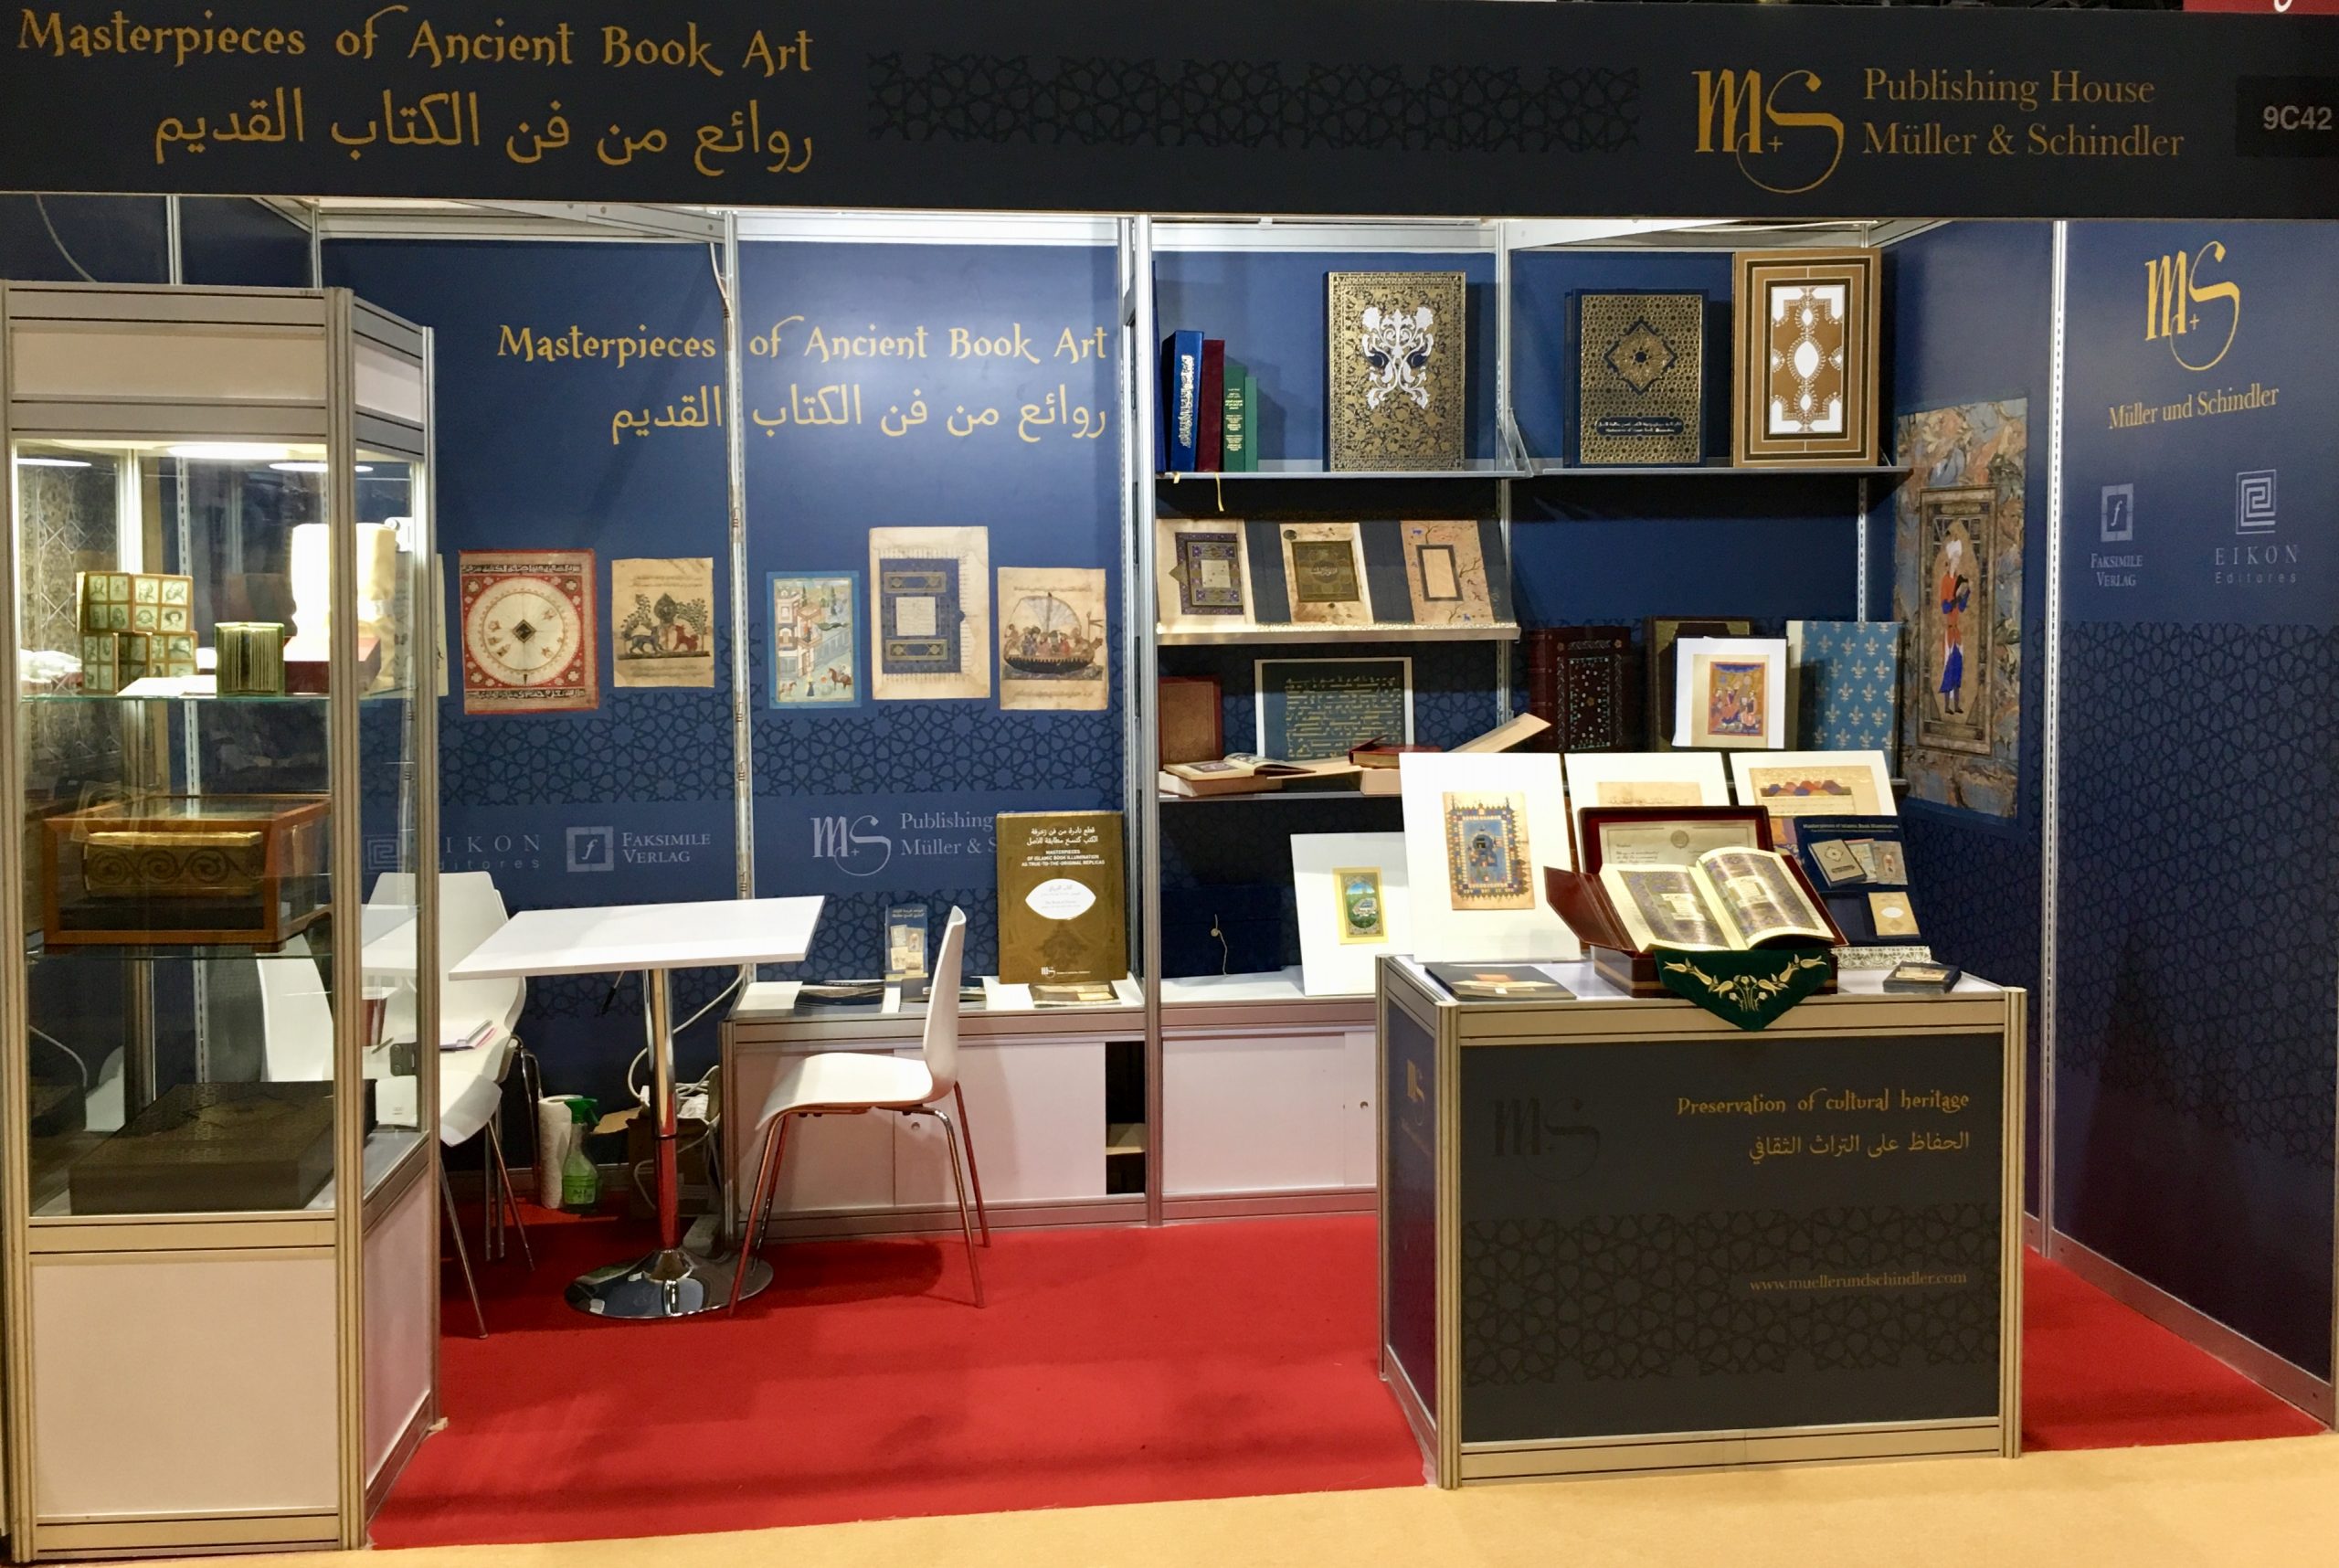 ADIBF, Abu Dhabi Book Fair